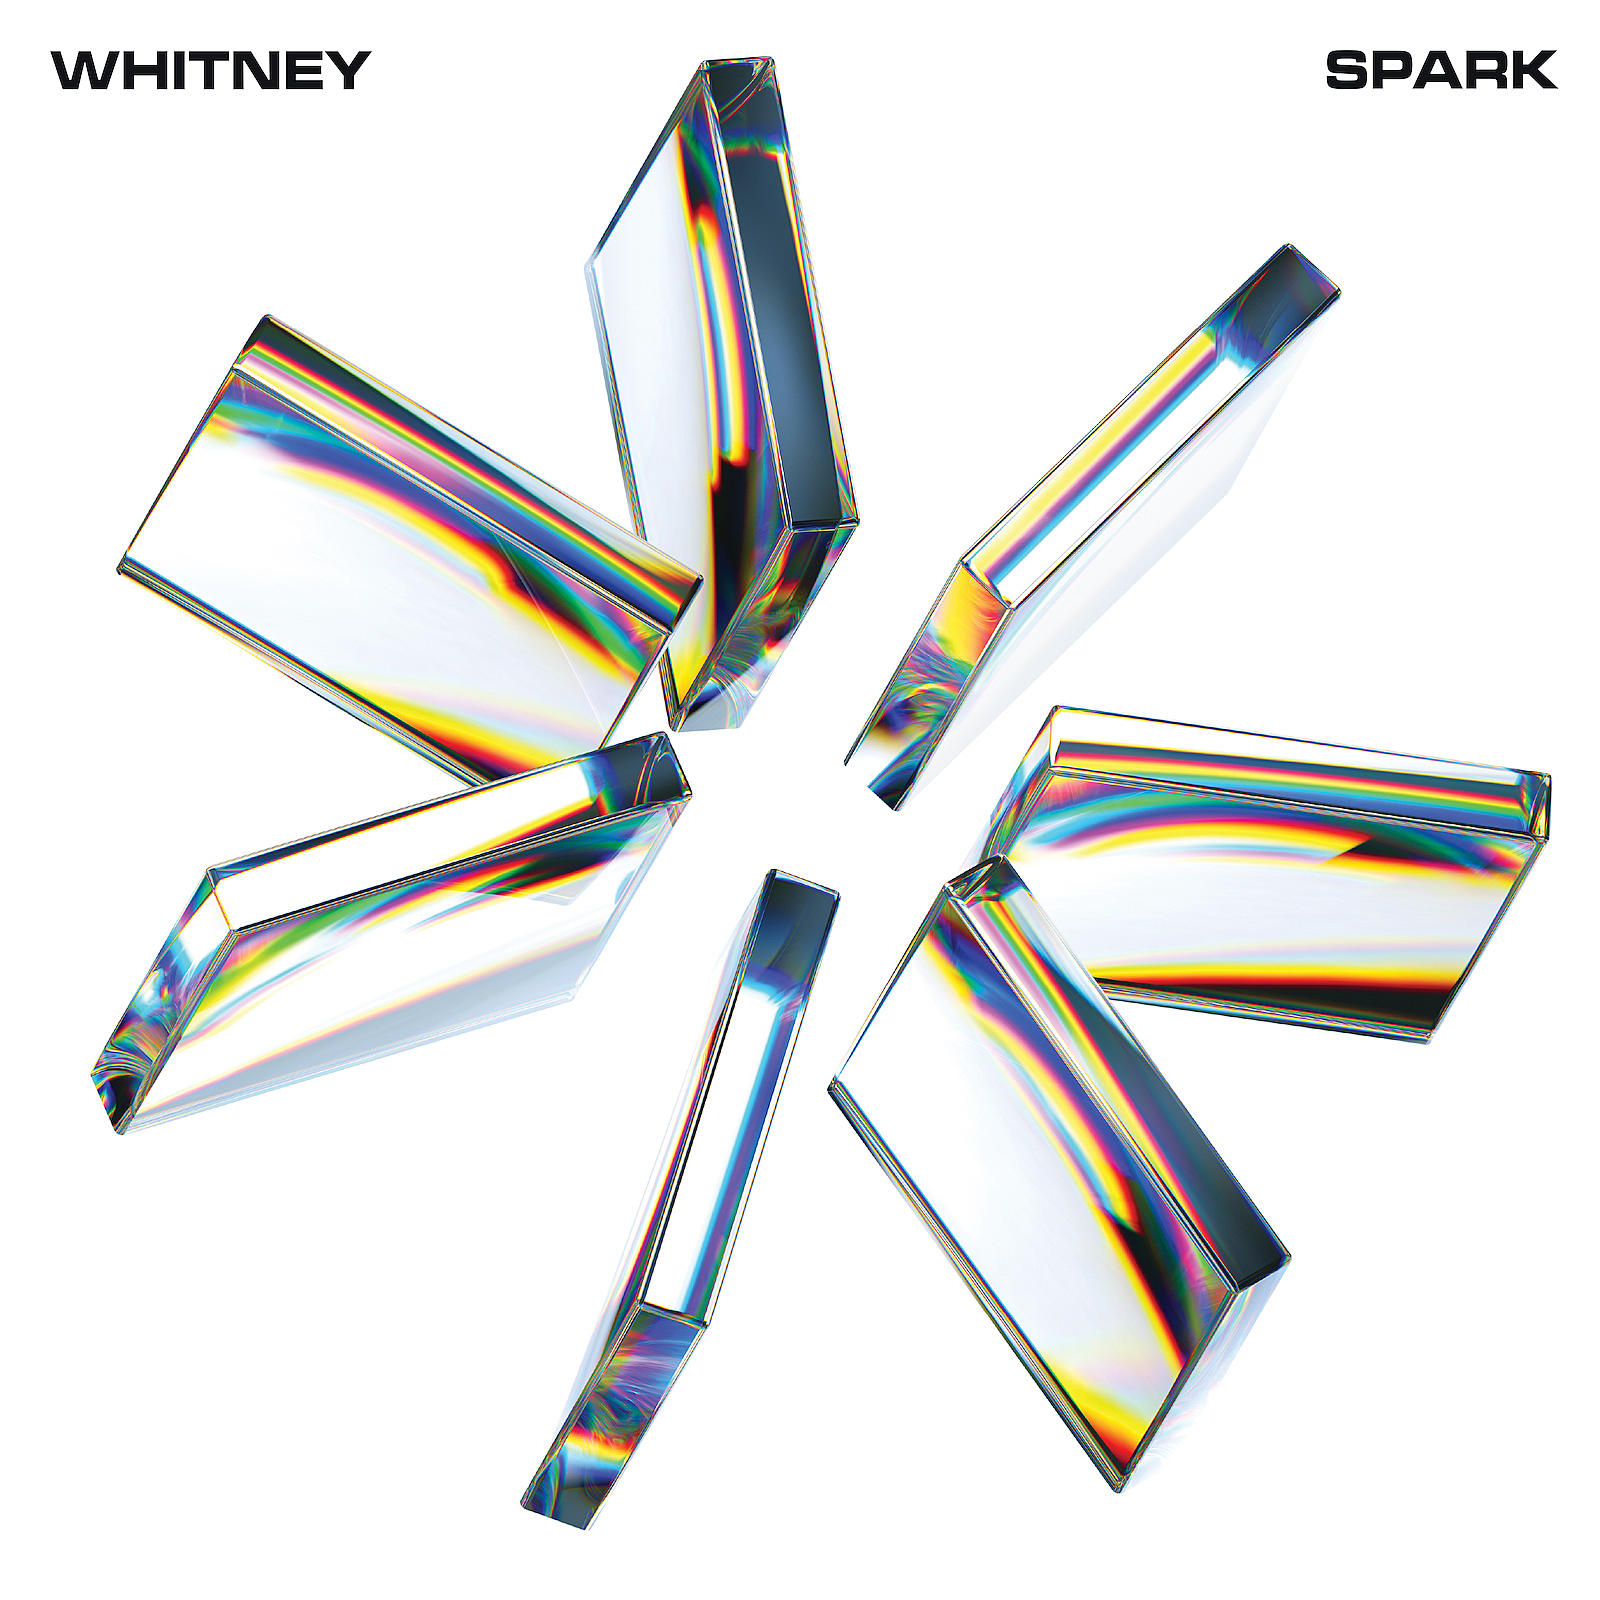 Whitney-SPARK-cover-artwork